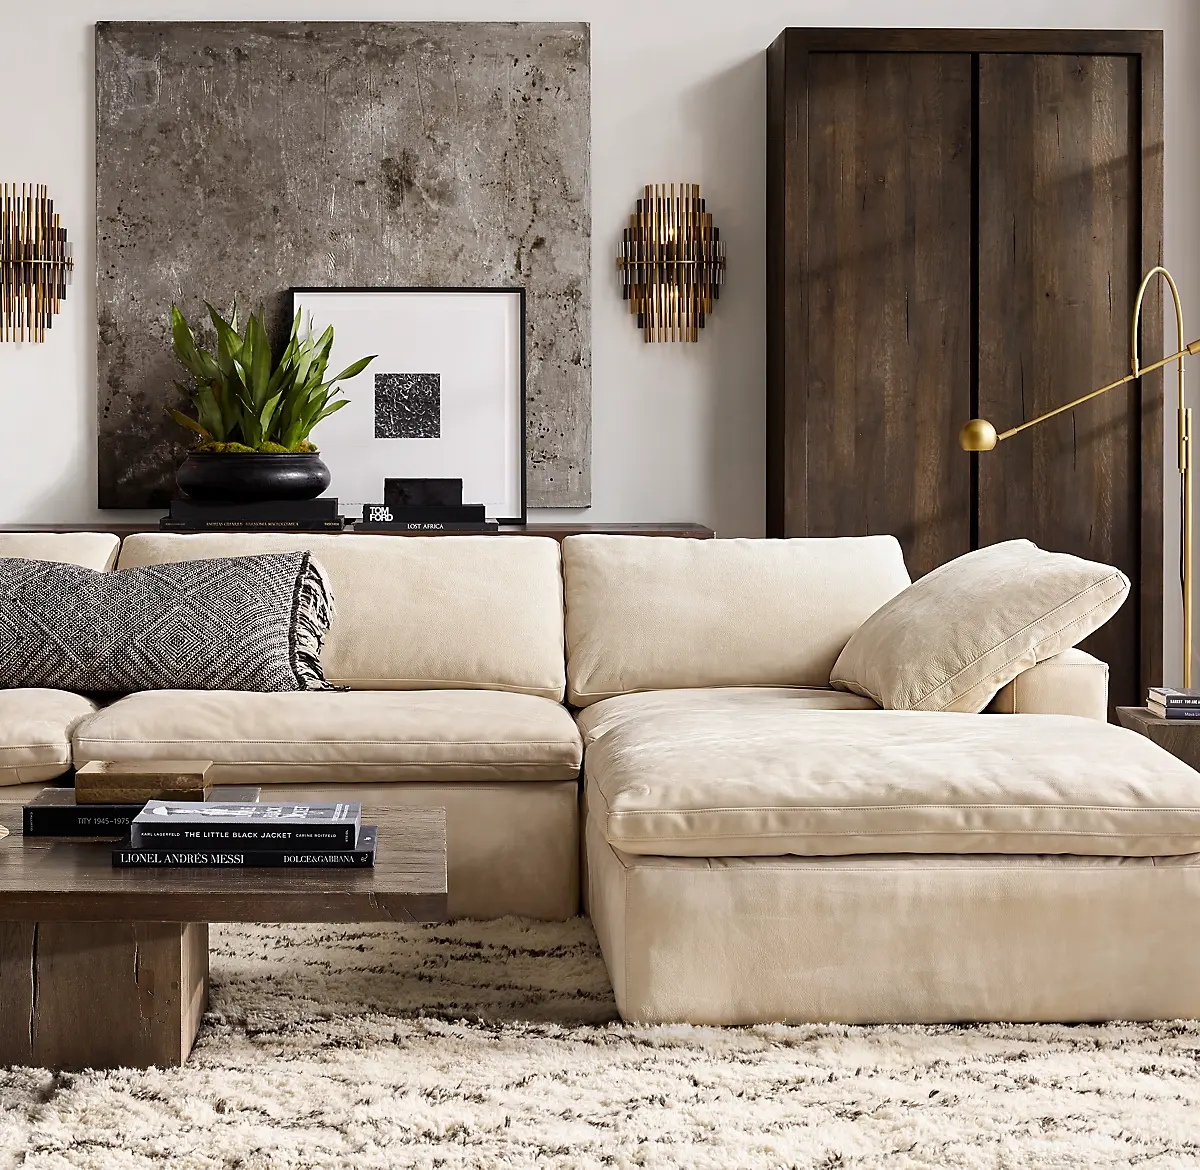 Conjunto de sofás seccionales de diseño americano, mobiliario de color personalizado de alta calidad para sala de estar interior